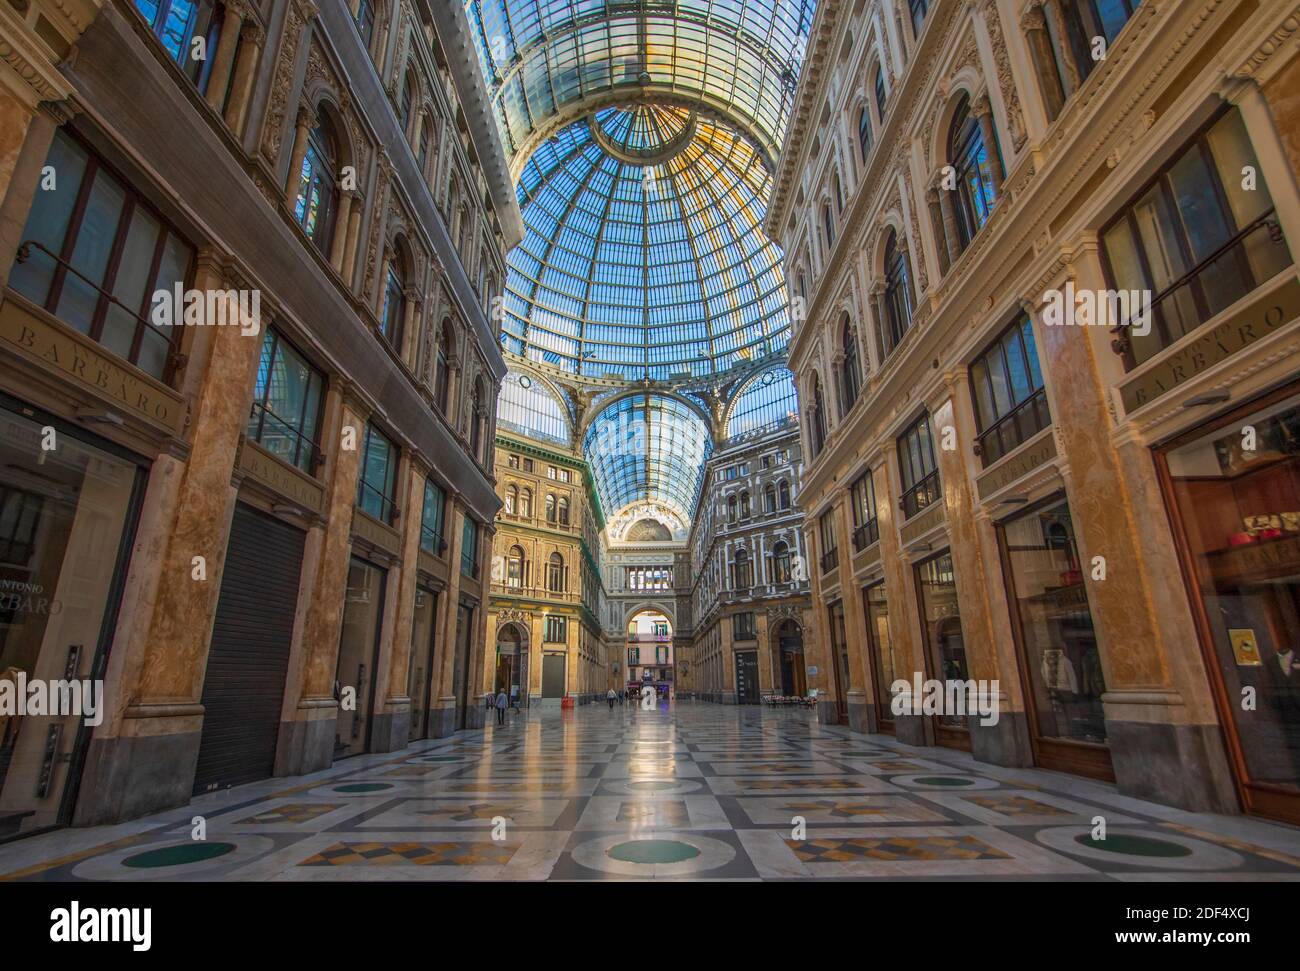 Die Galleria Umberto I wurde 1887 erbaut und nach König Umberto benannt. Sie ist Teil des UNESCO-Weltkulturerbes Altstadt von Neapel Stockfoto